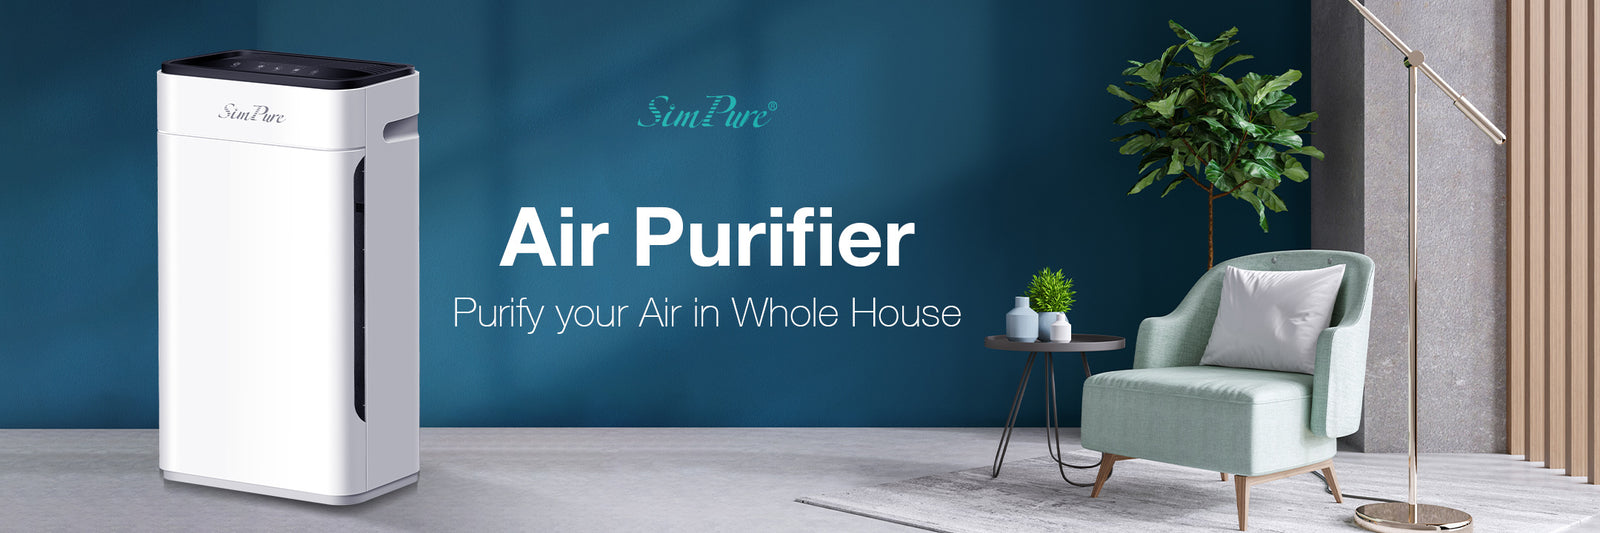 SimPure air purifier